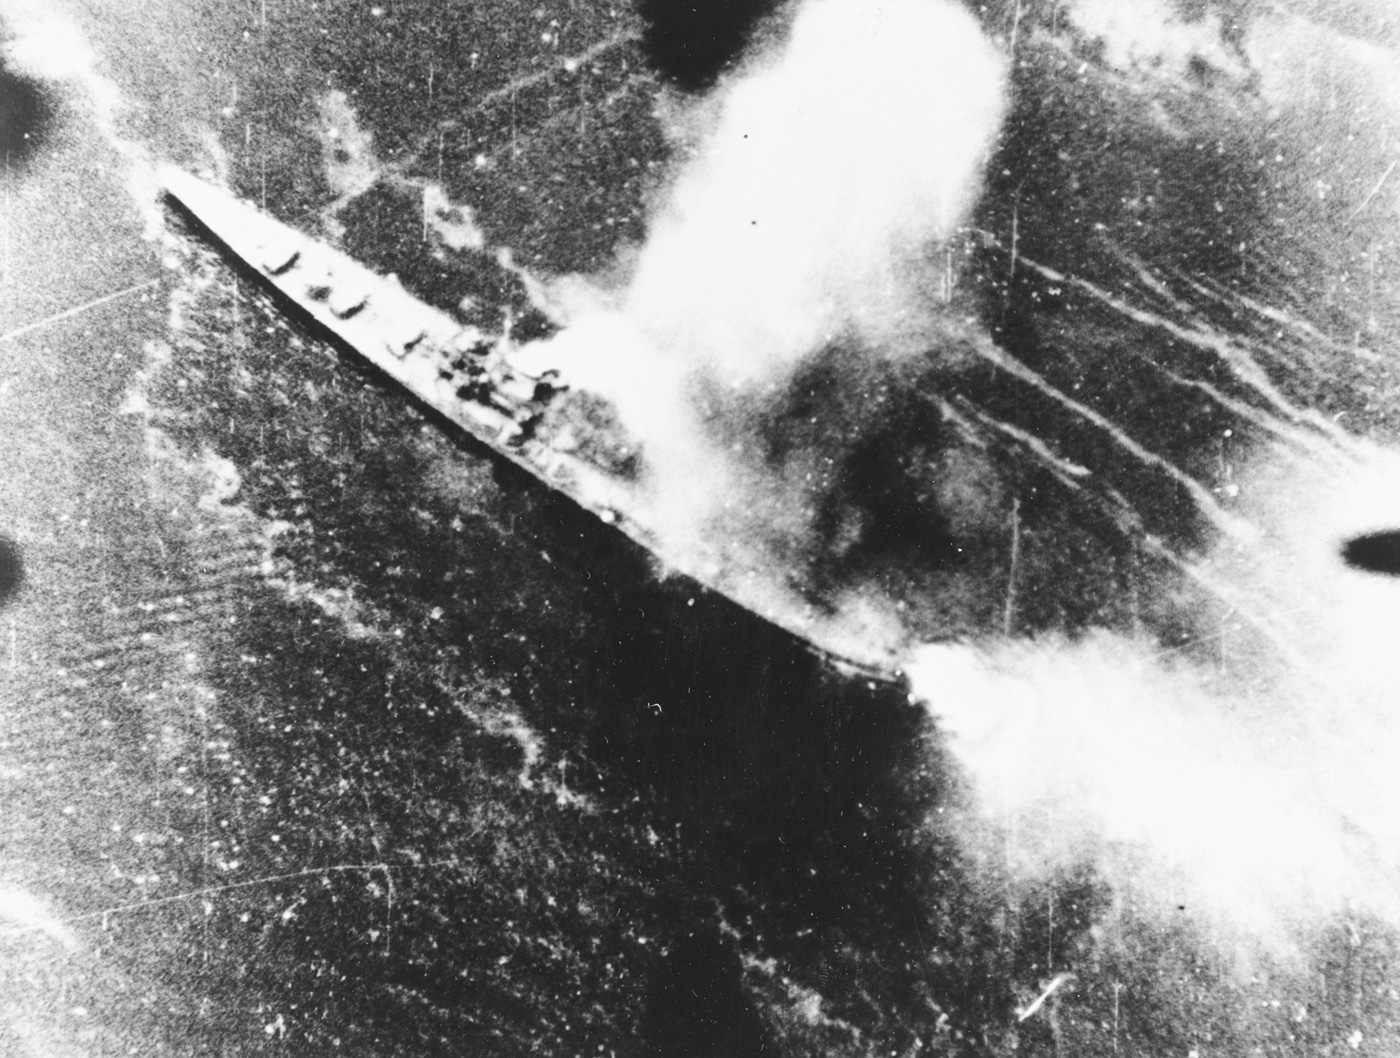 sbd bomber attacks a japanese cruiser at rabaul 1943